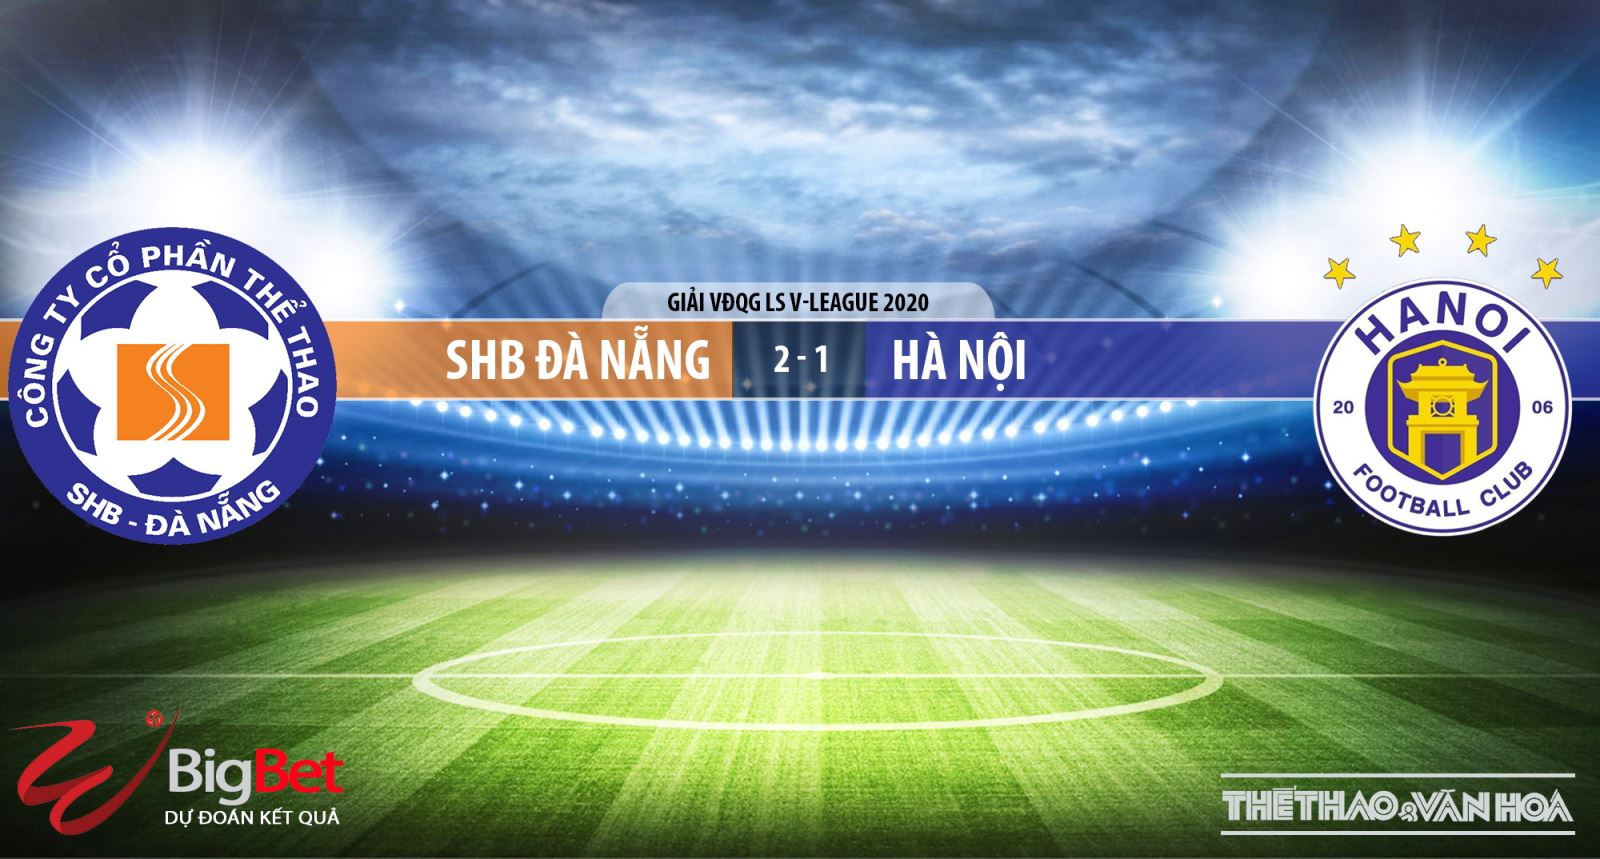 SHB Đà Nẵng vs Hà Nội, Đà Nẵng, Hà Nội, nhận định bóng đá bóng đá, kèo bóng đá, trực tiếp bóng đá, lịch thi đấu bóng đá hôm nay